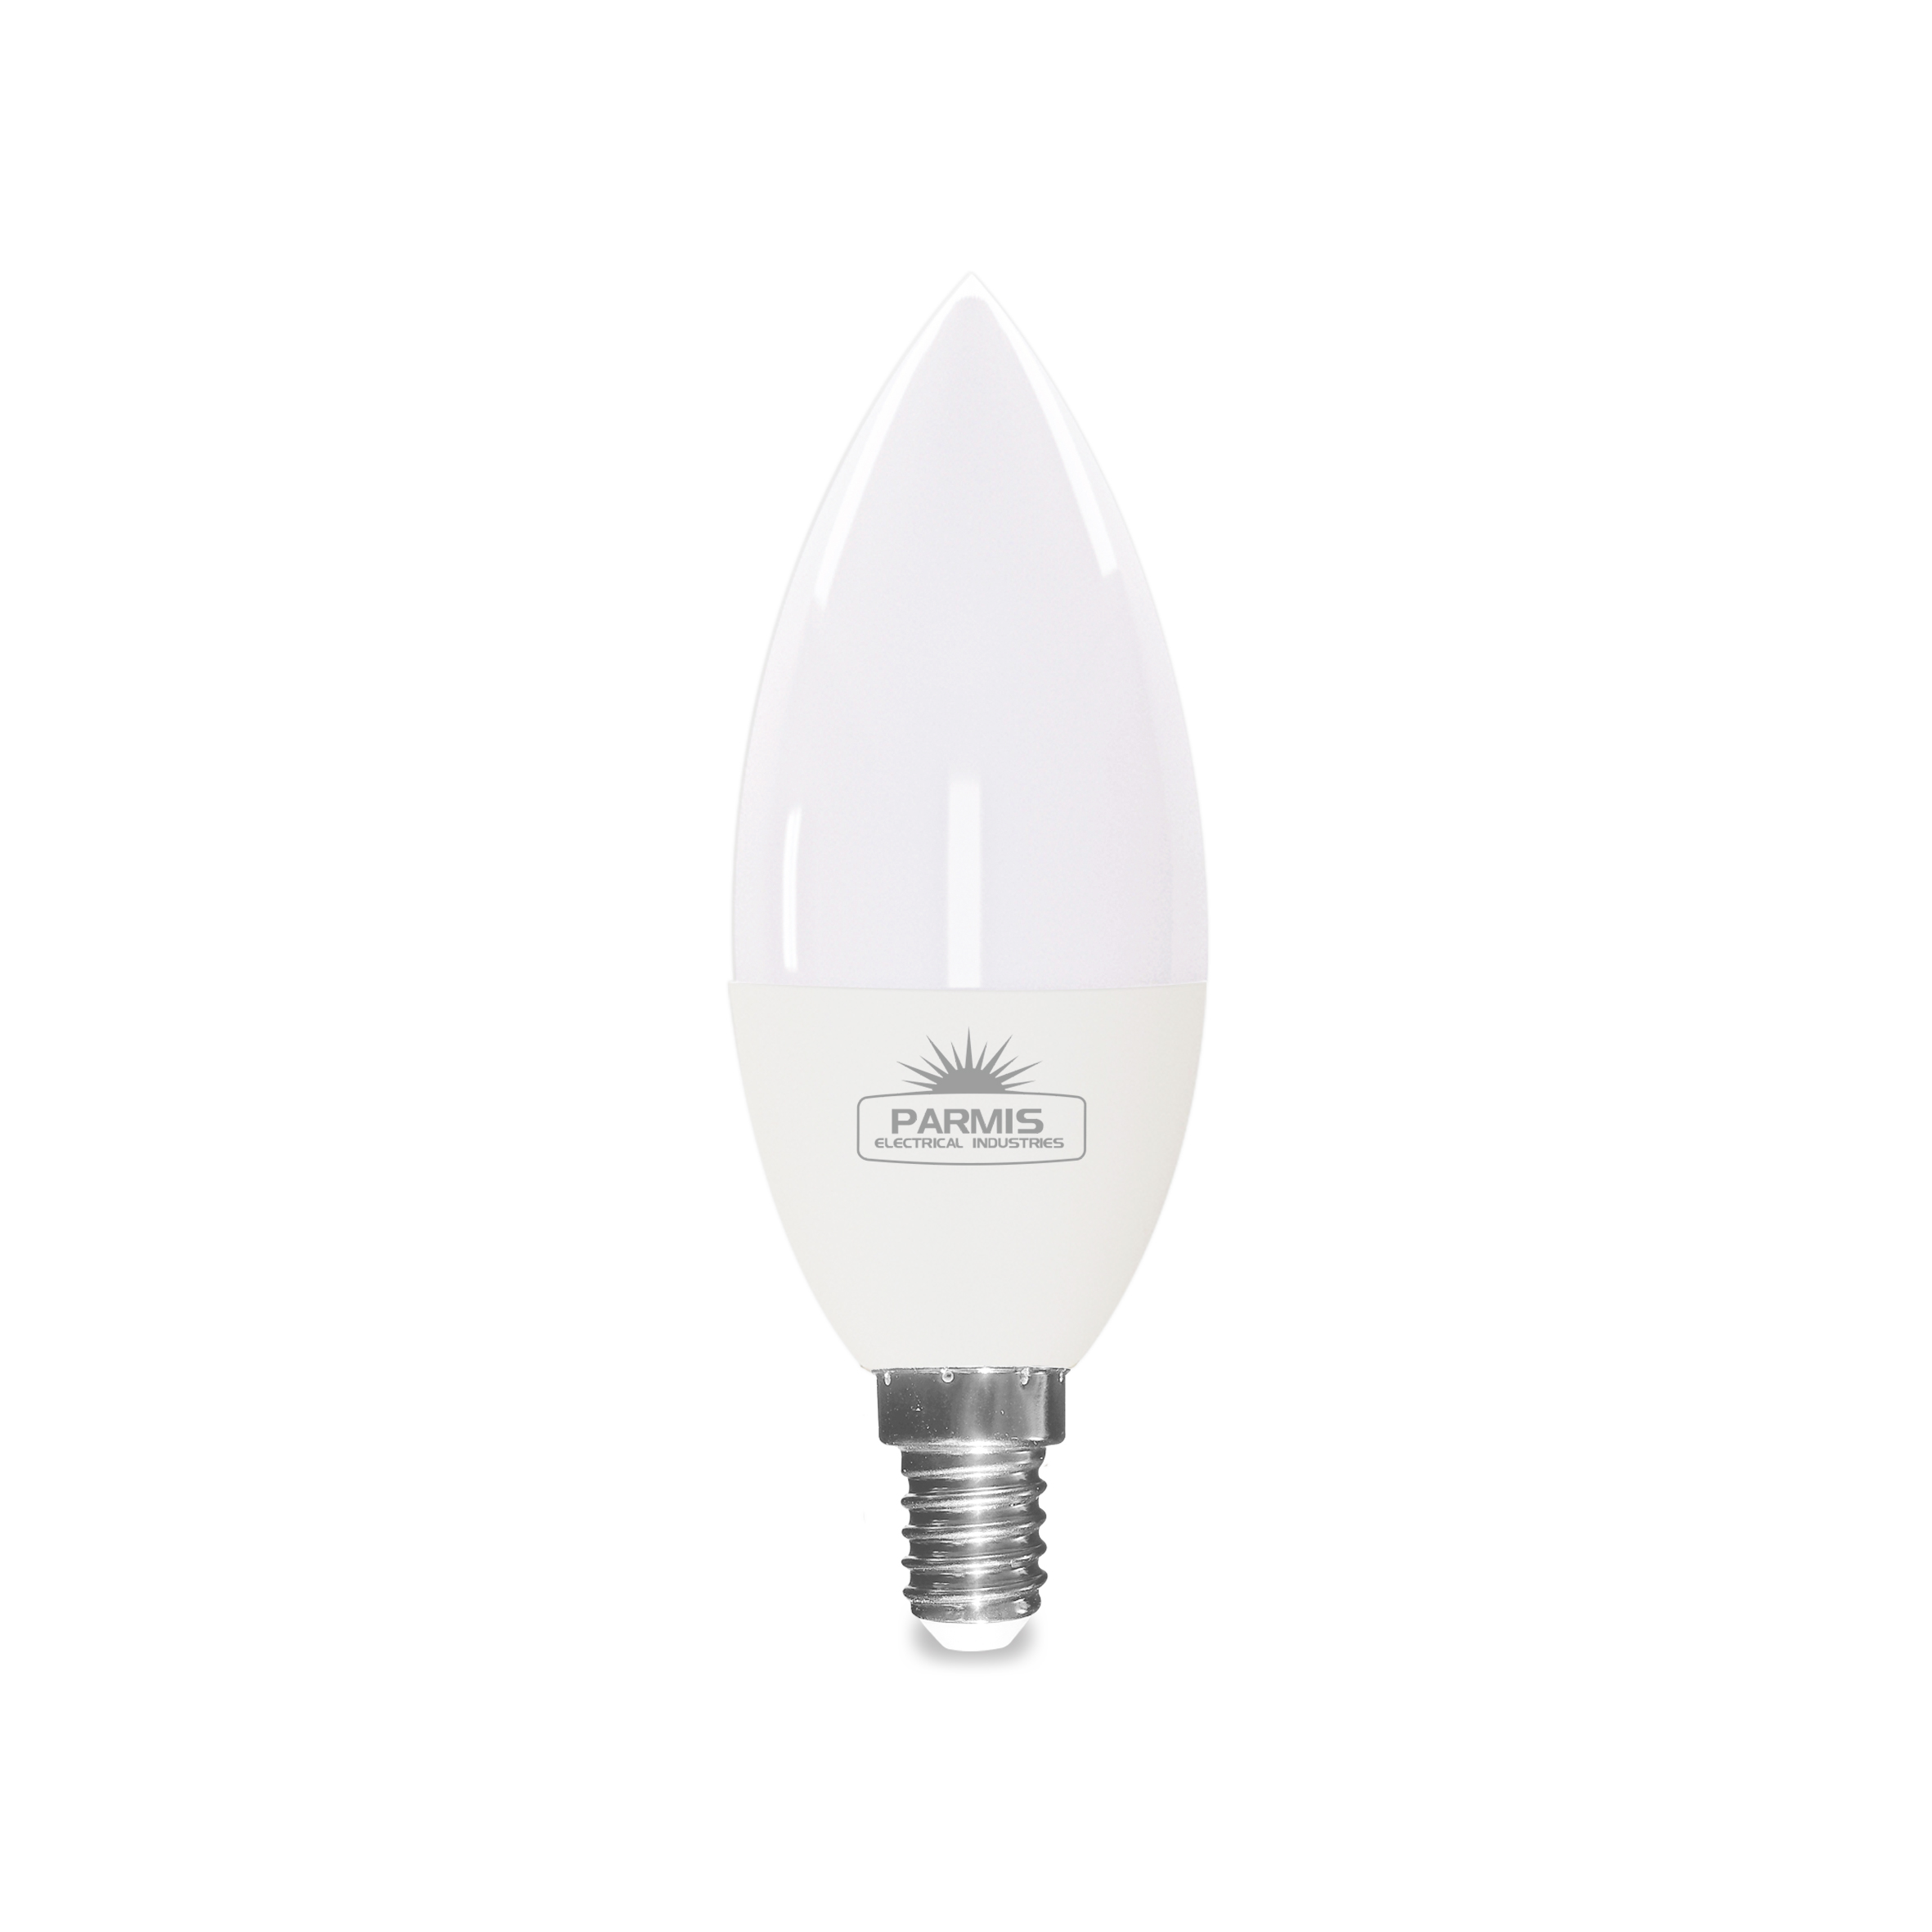 لامپ ال ای دی 8 وات صنایع الکتریکی پارمیس مدل شمعی پایه E14